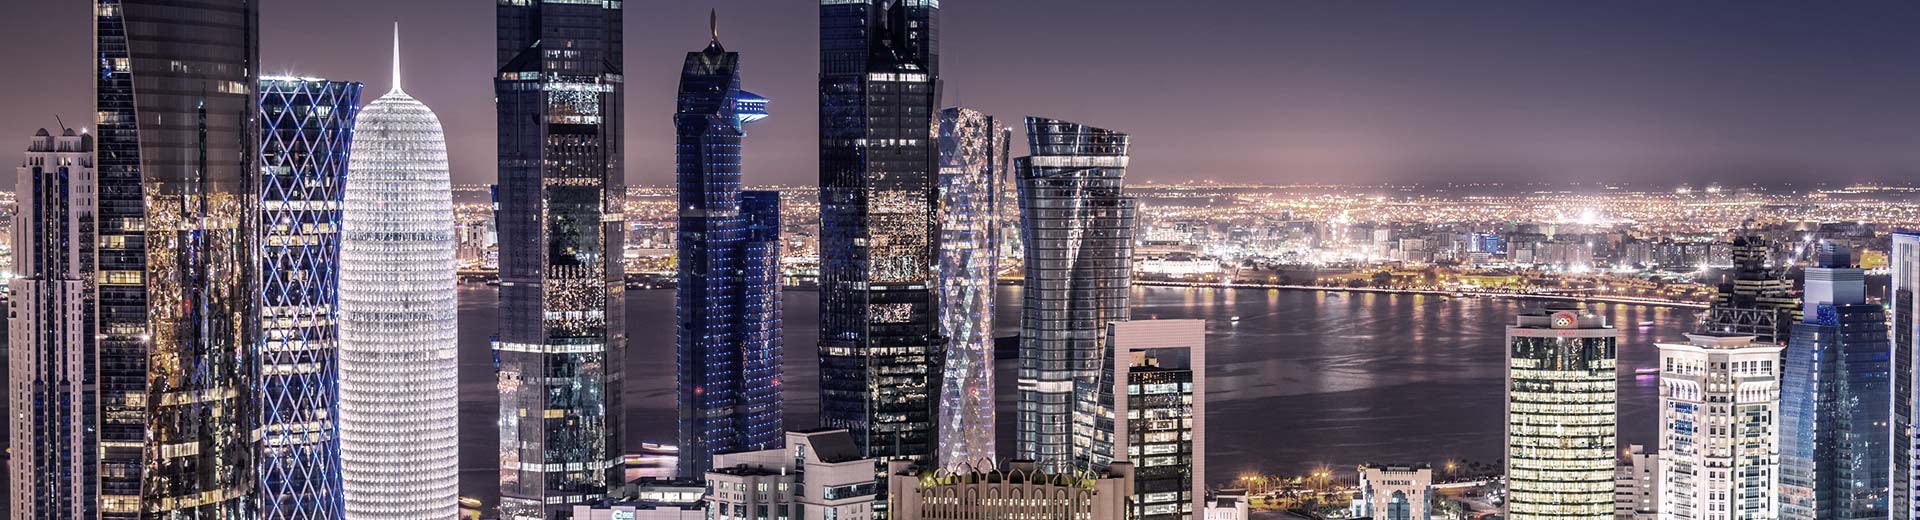 Les gratte-ciel variés et imposants de Doha perce le Nightsky.